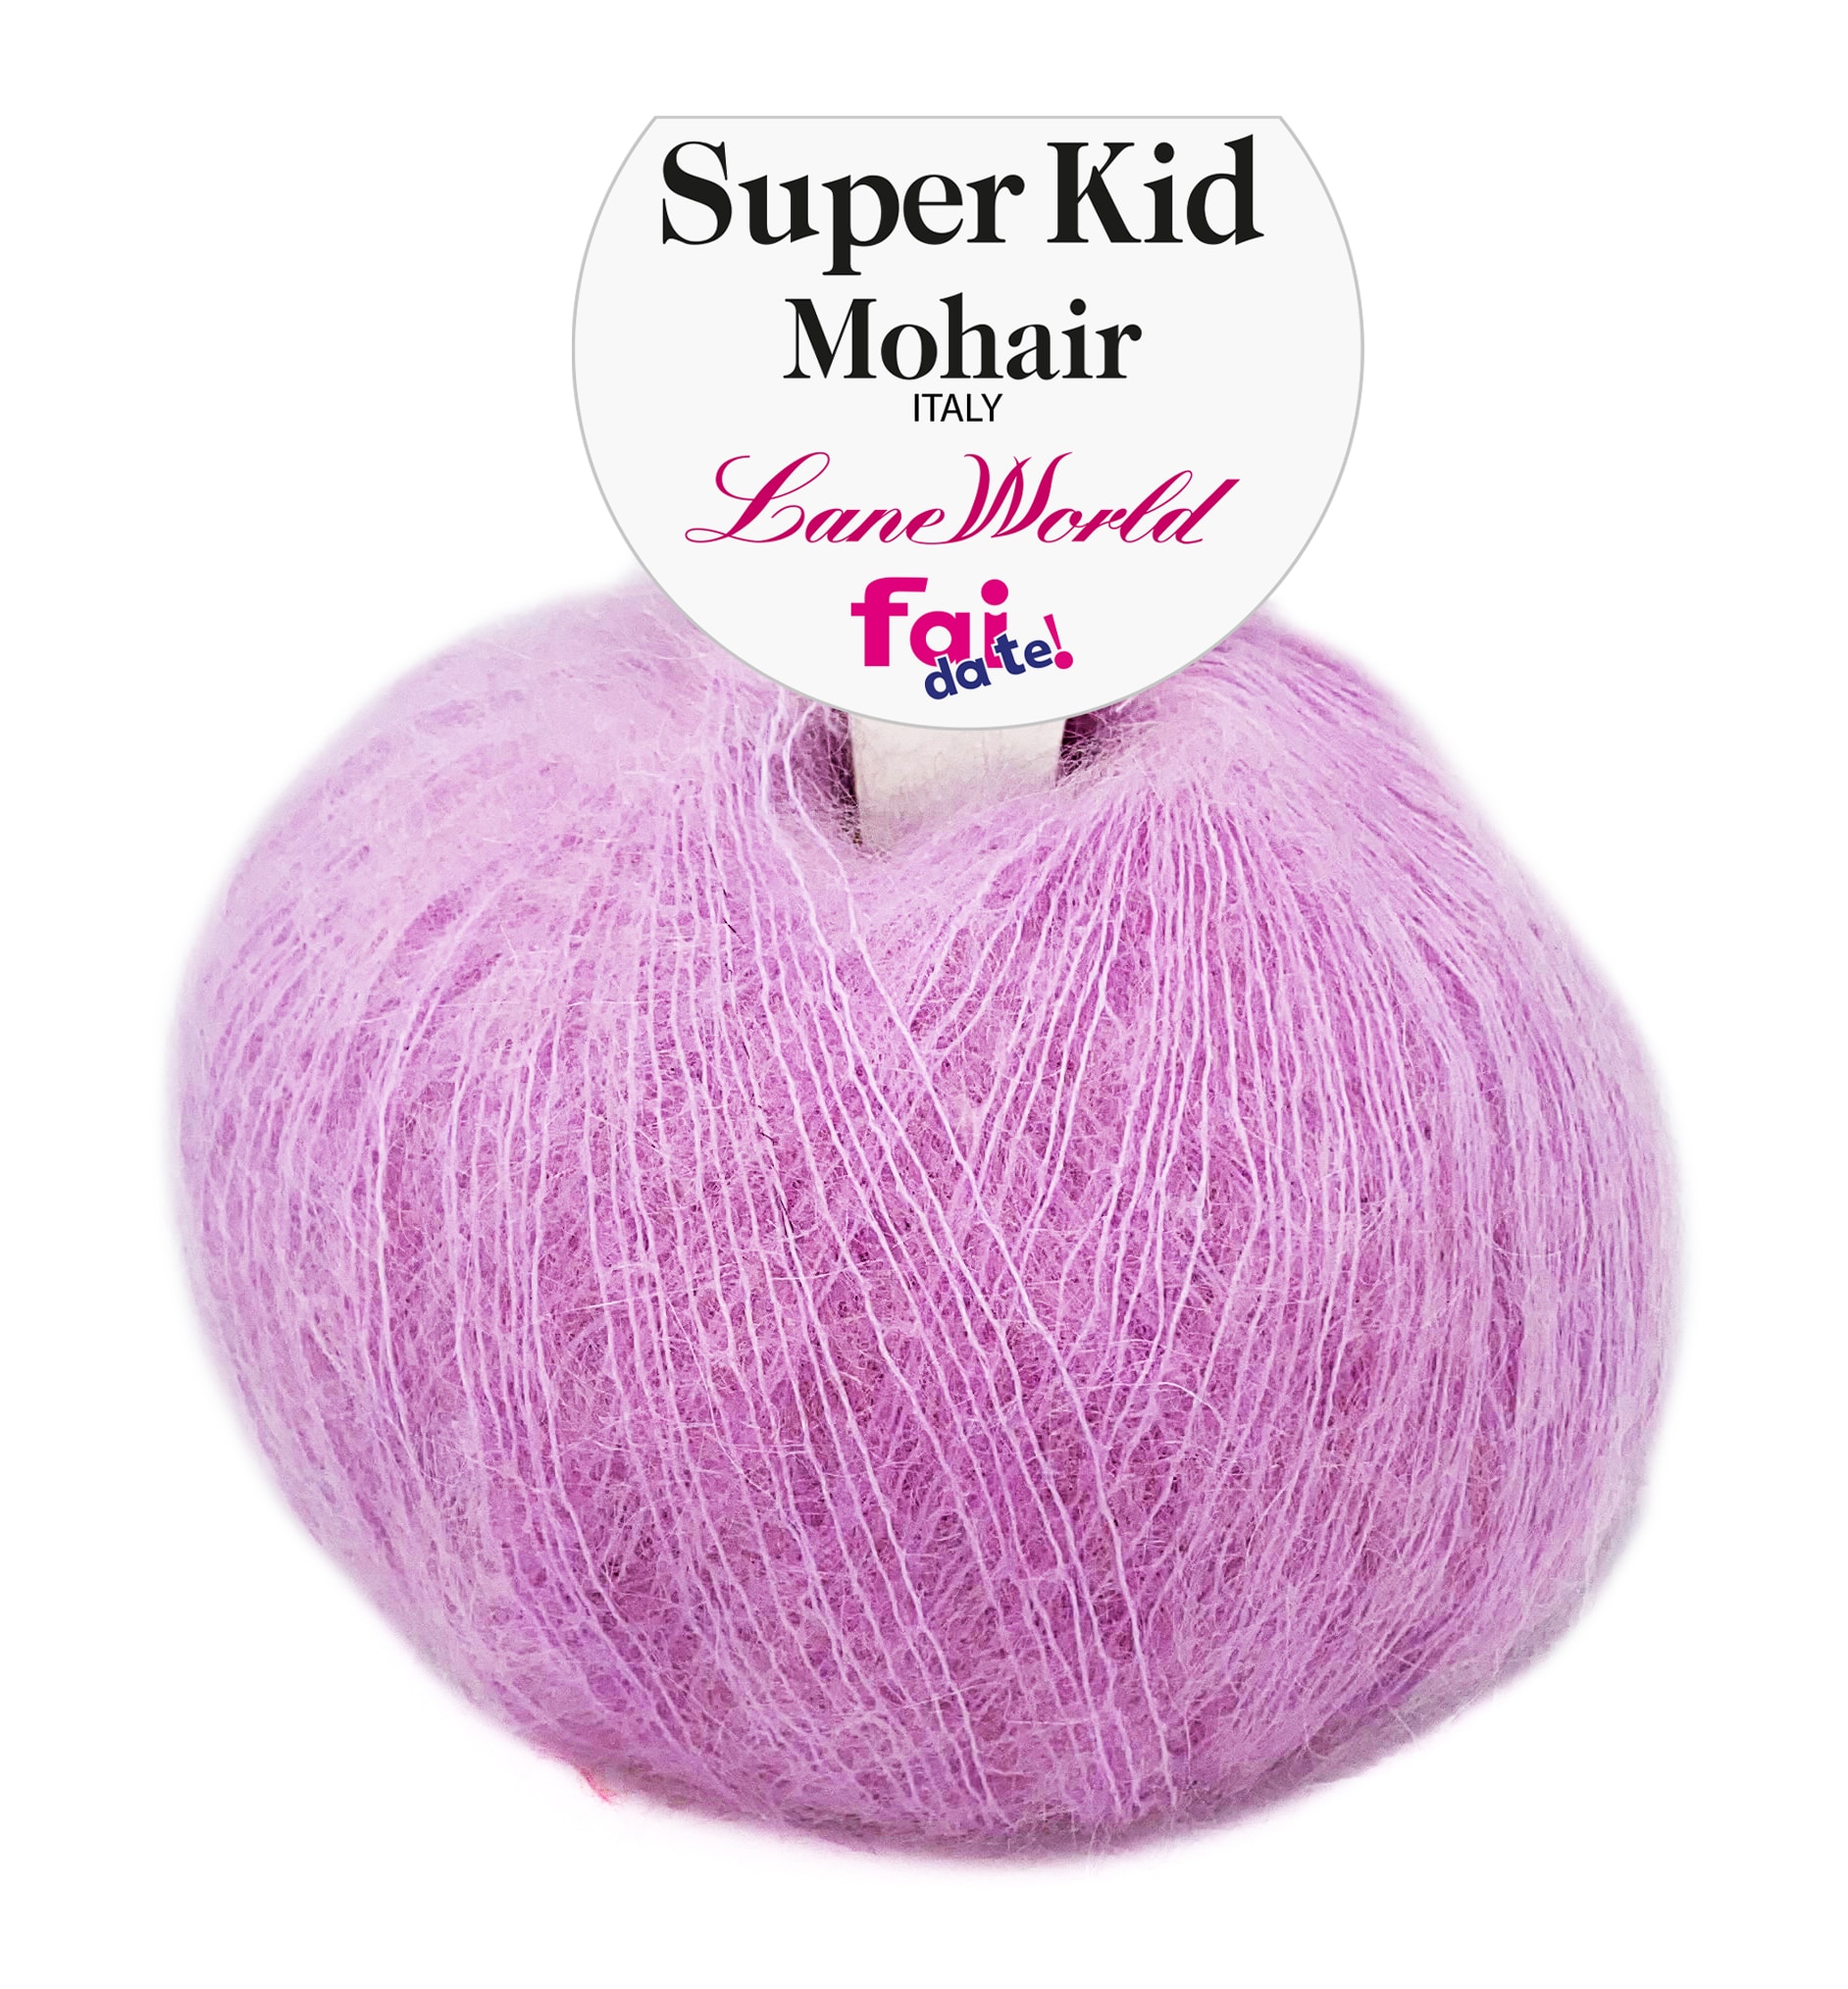 Super Kid Mohair – gomitolo 40 grammi